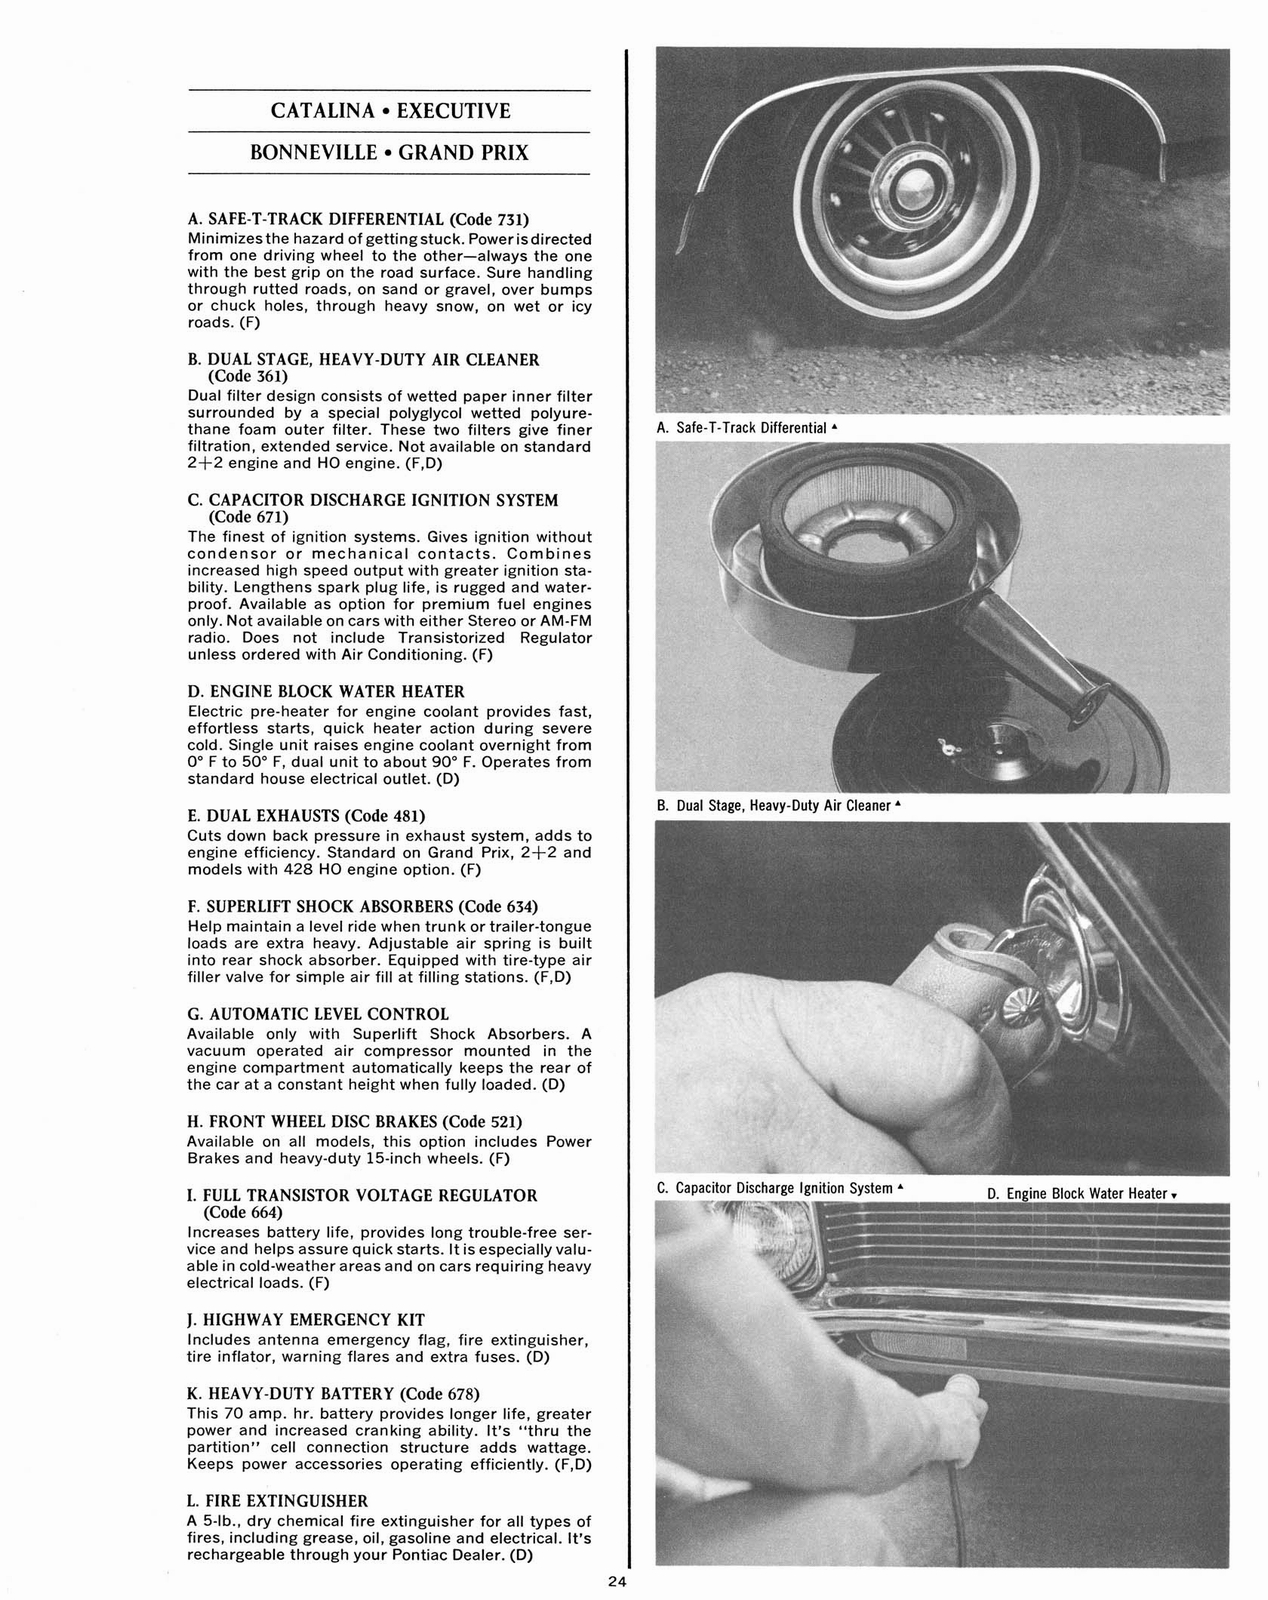 n_1967 Pontiac Accessories-24.jpg